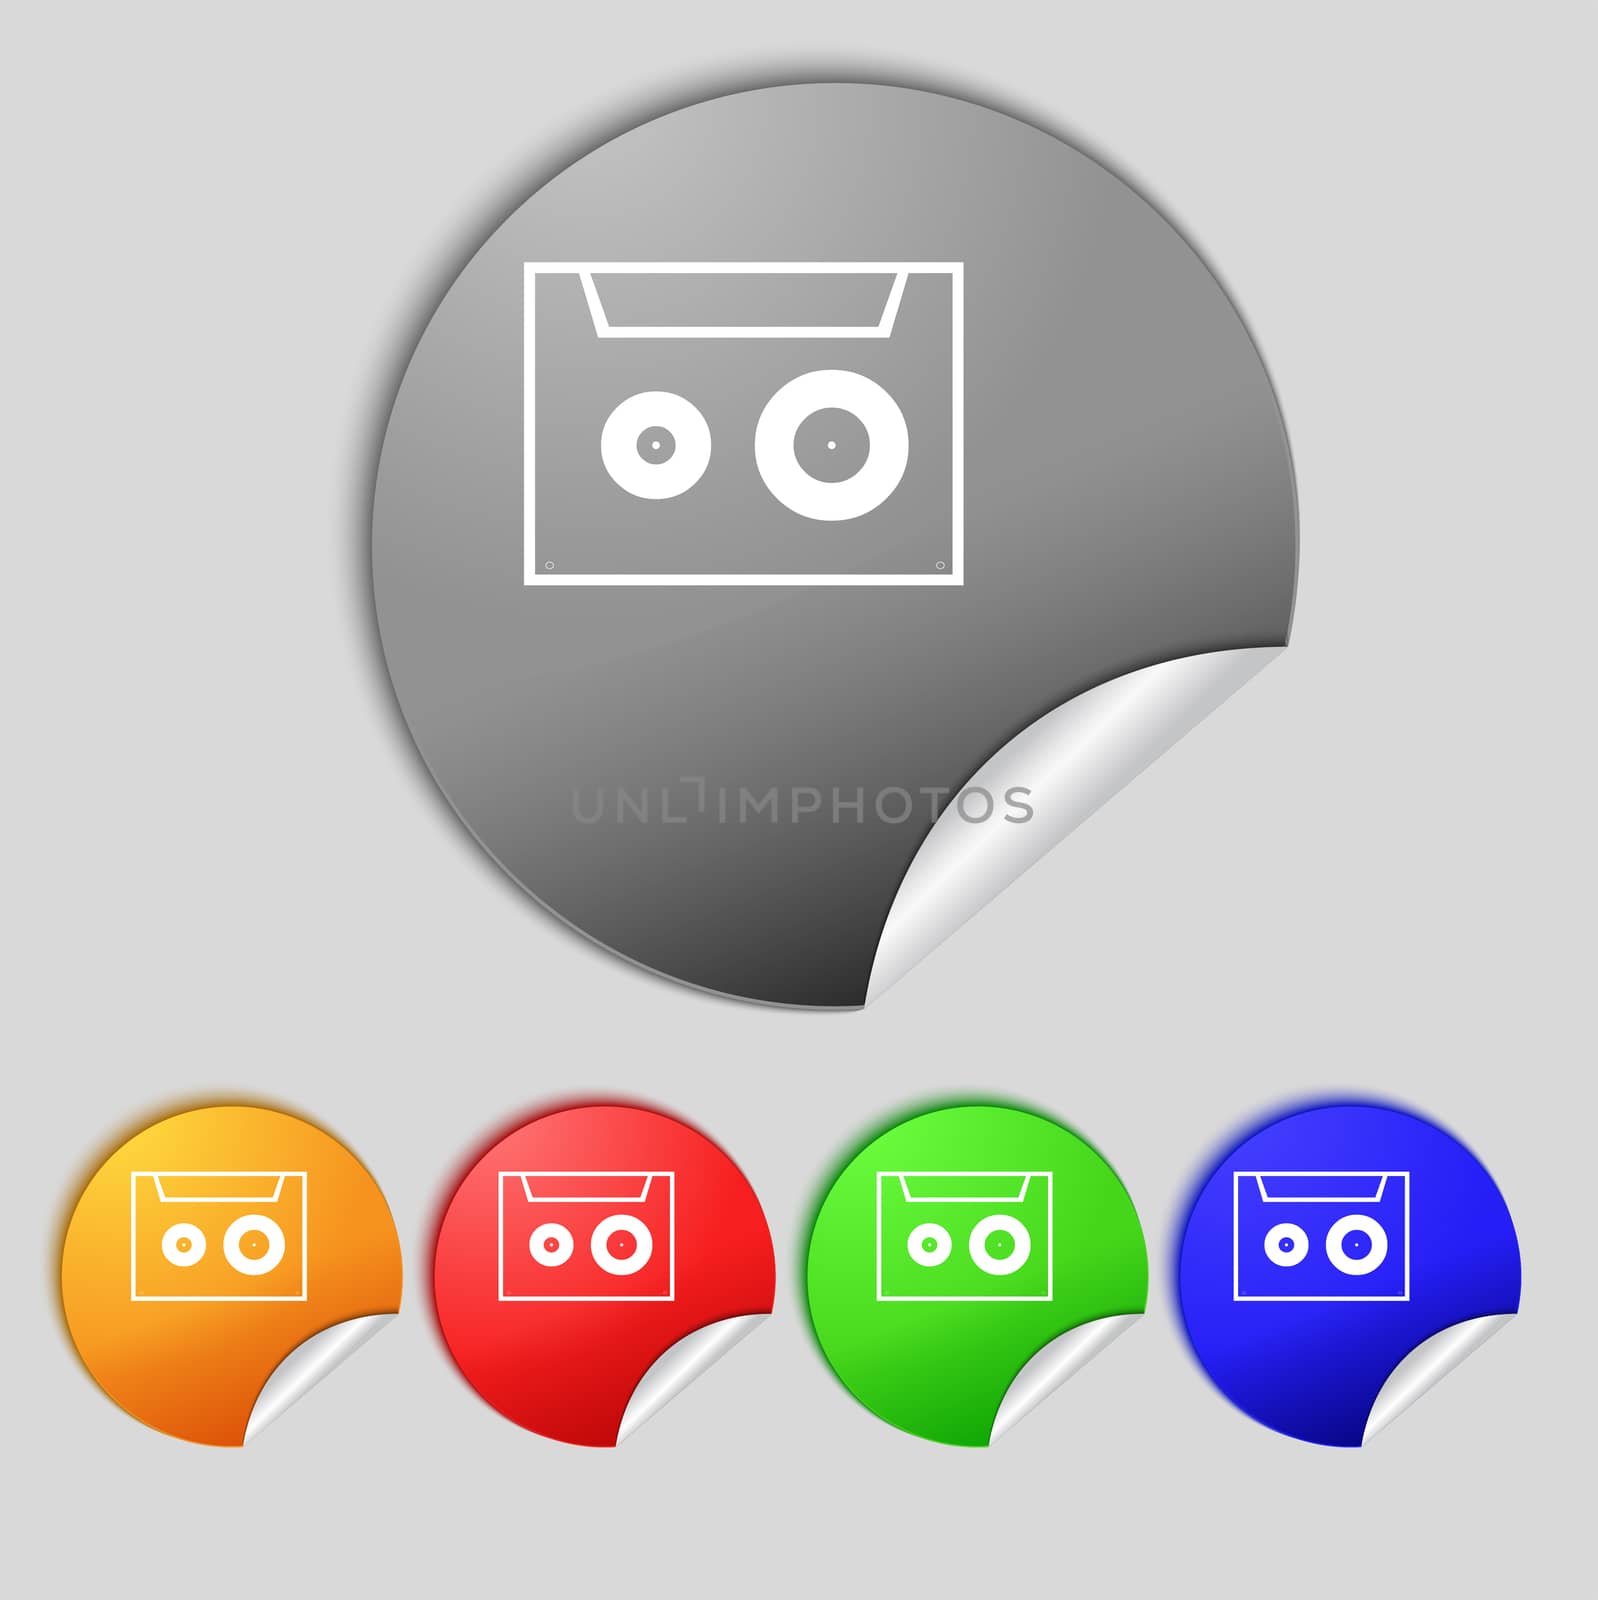 cassette sign icon. Audiocassette symbol. Set of colour buttons. illustration